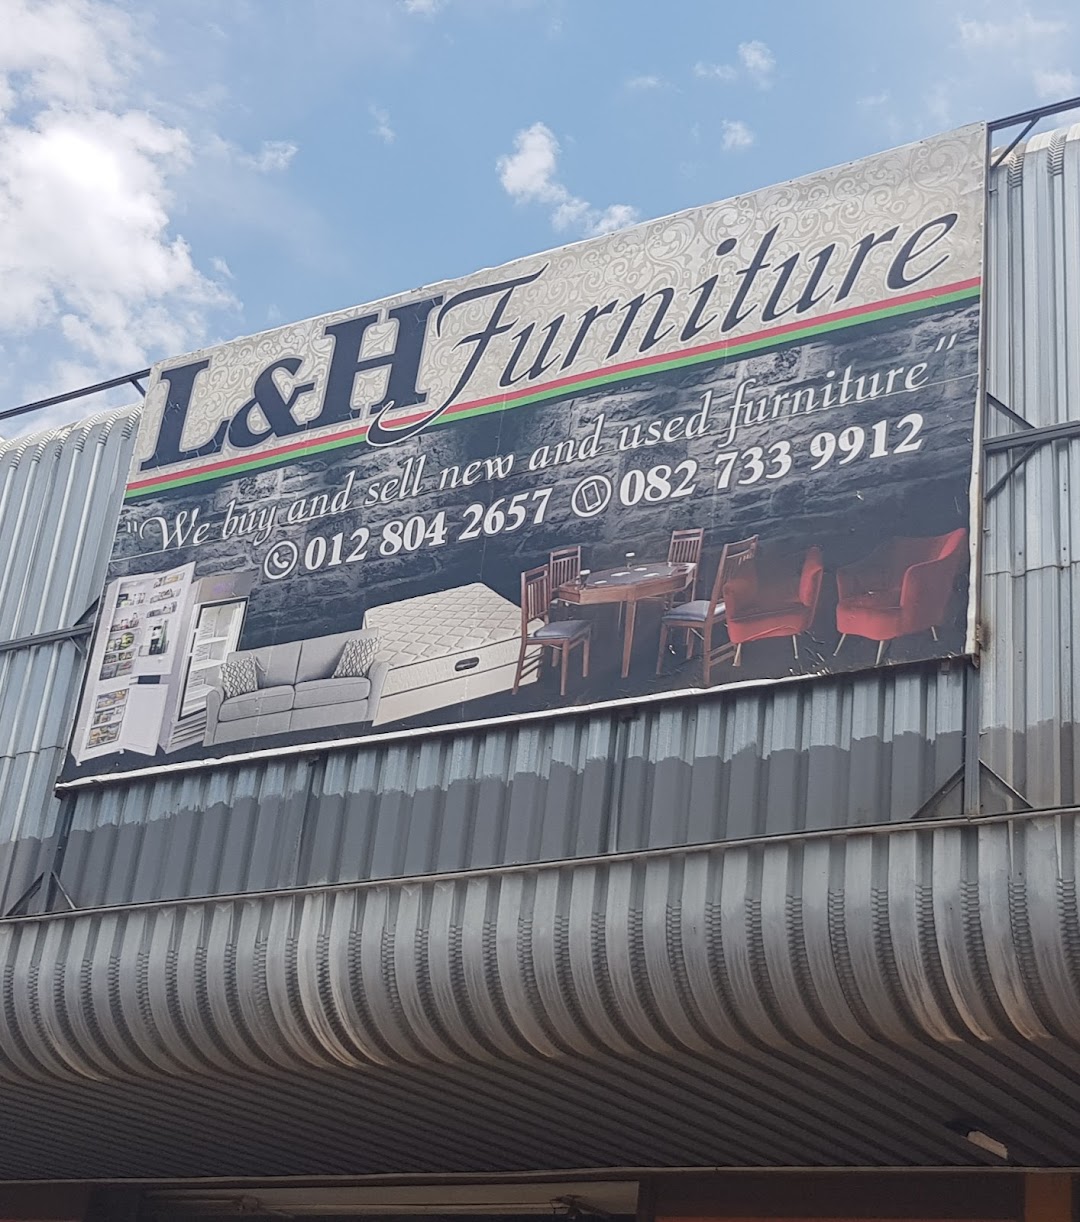 L & H Furniture